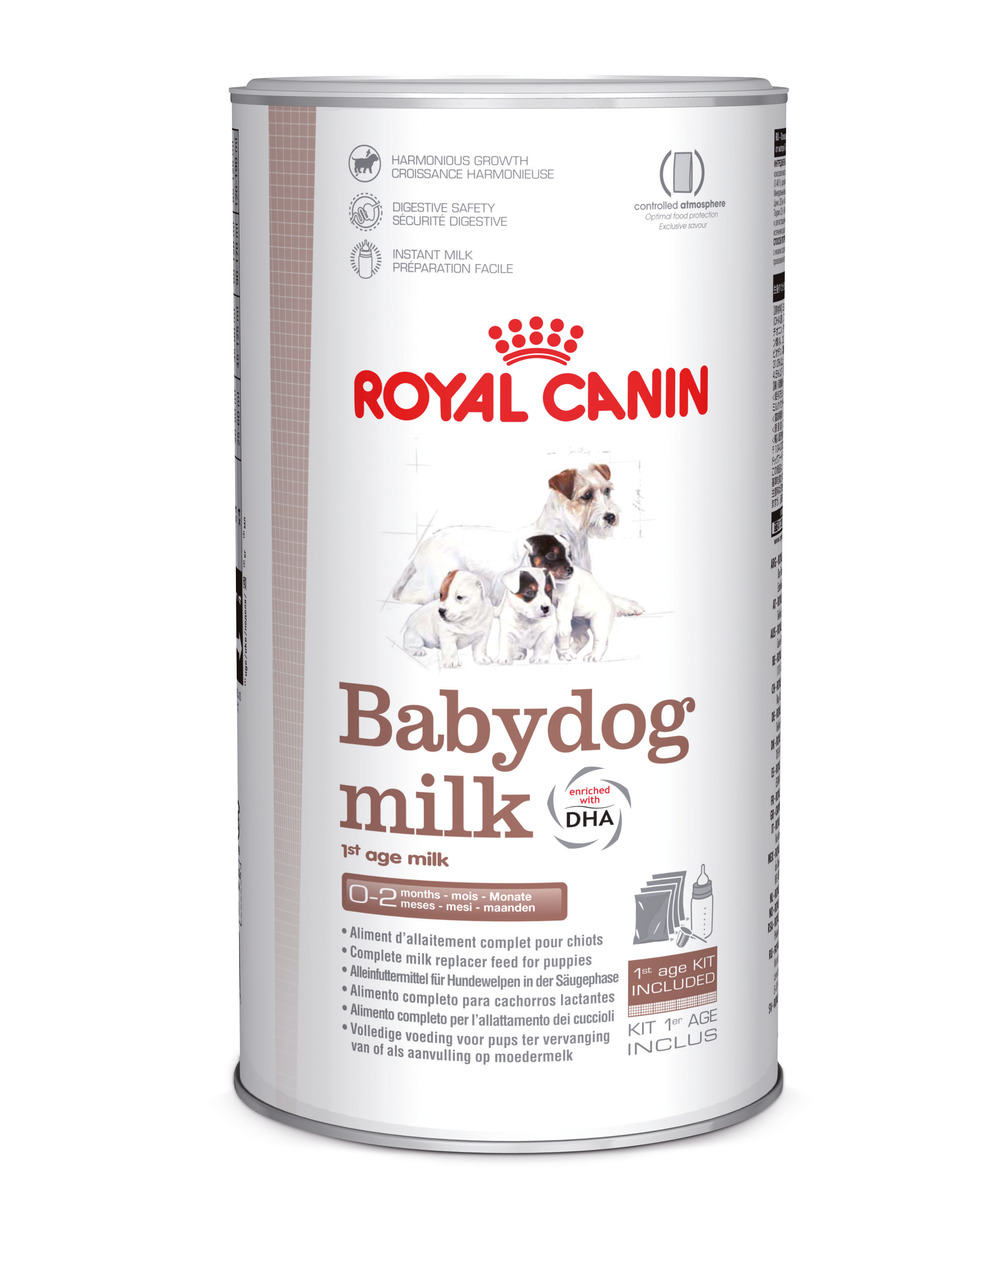 Sparpaket 2 x 400 g Royal Canin Babydog Milk 1st Age Milk Hunde Nahrungsergänzung